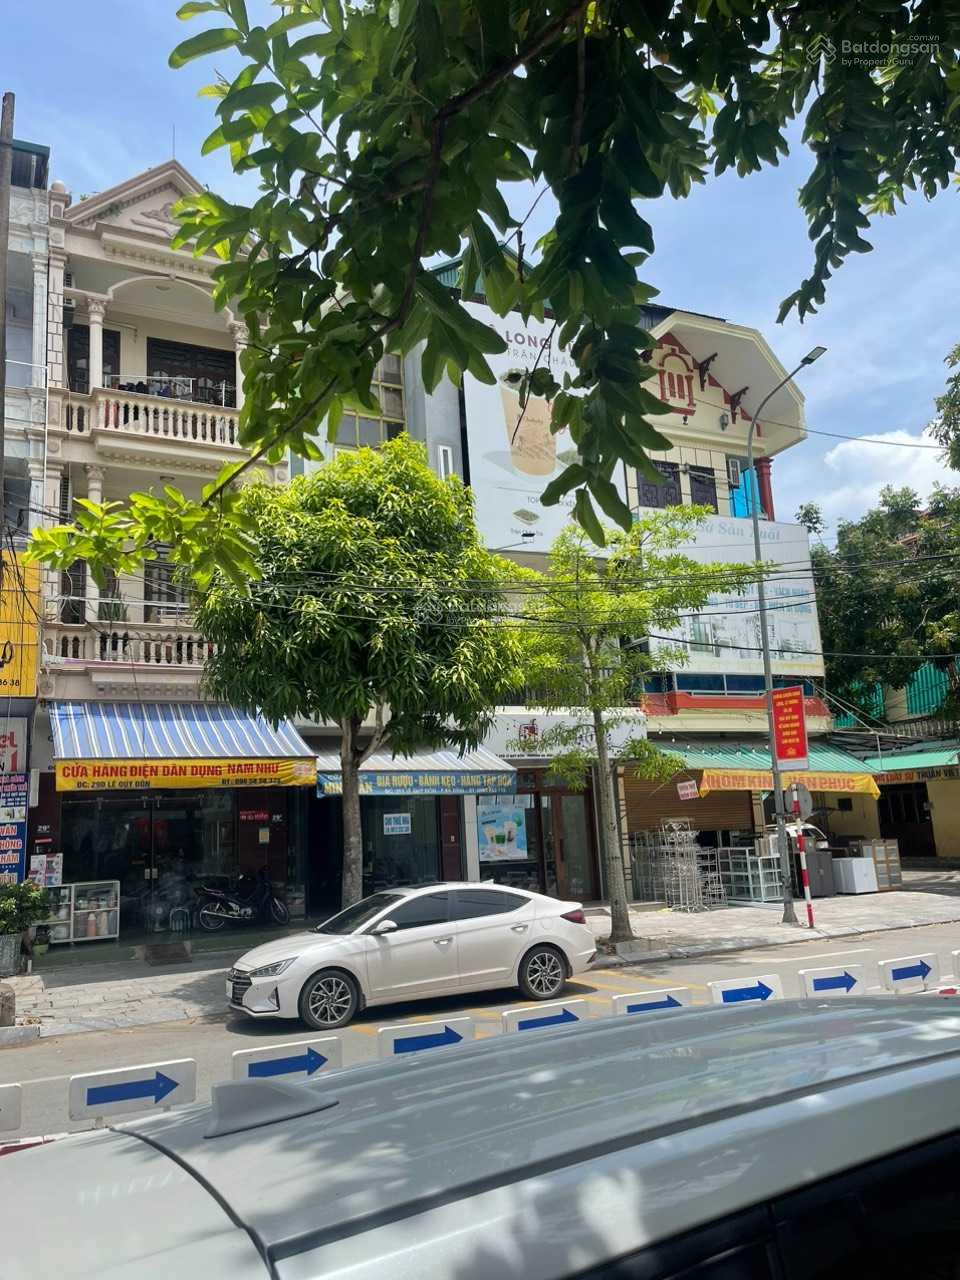 Bán nhà mặt tiền đường Lê Quý Đôn kinh doanh đa nghành tại thành phố Thanh Hóa - Ảnh 1